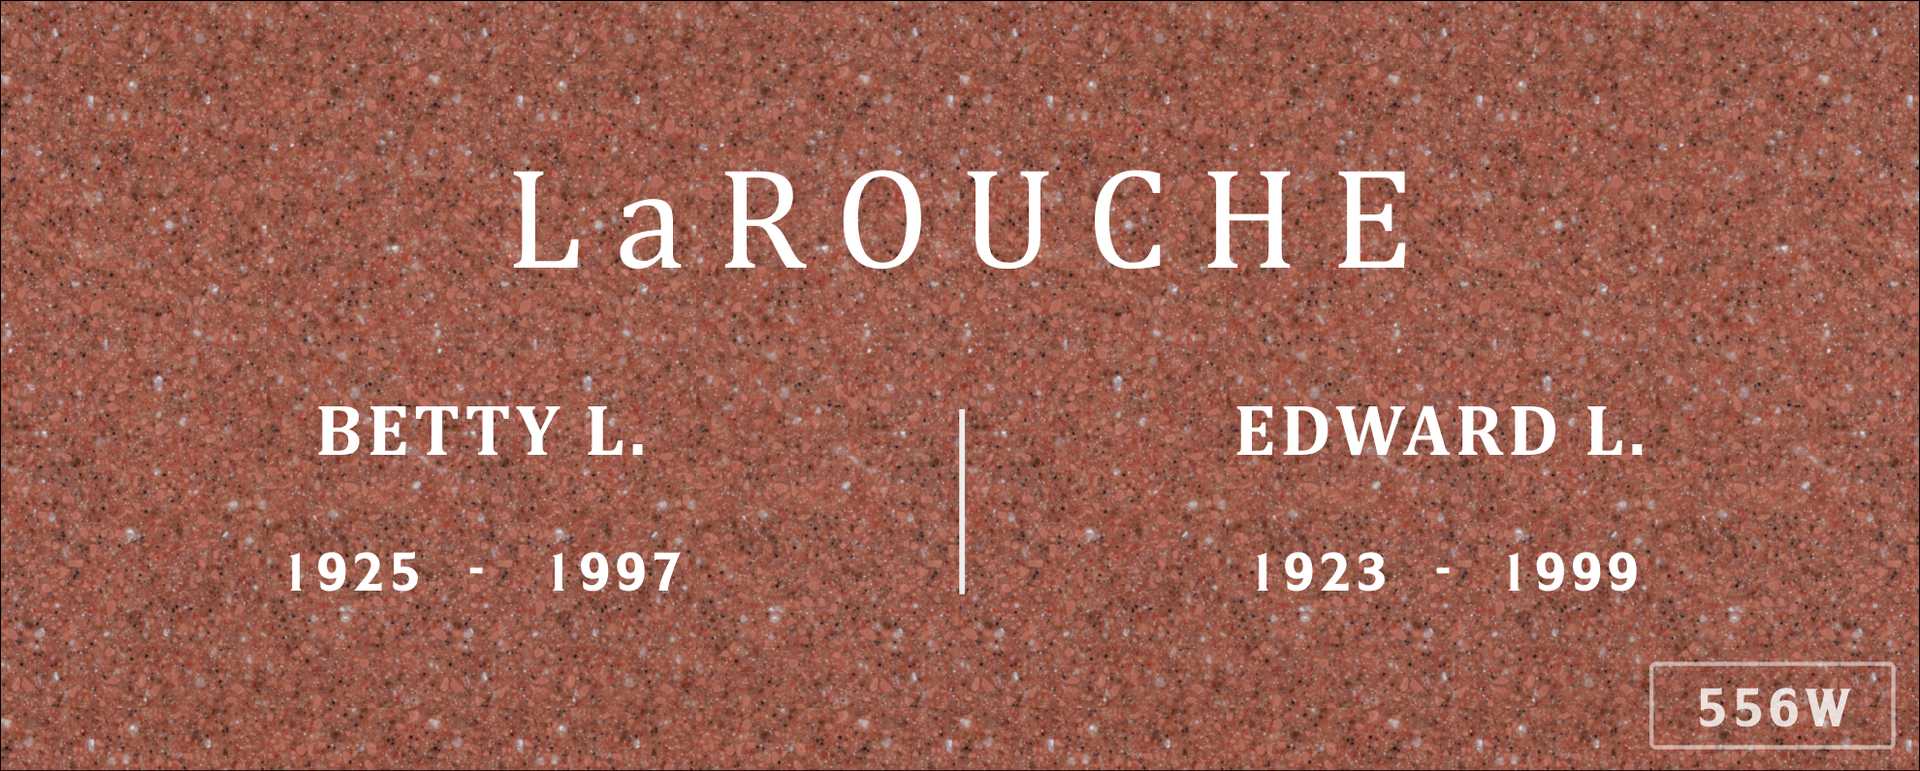 Edward L. La Rouche's grave